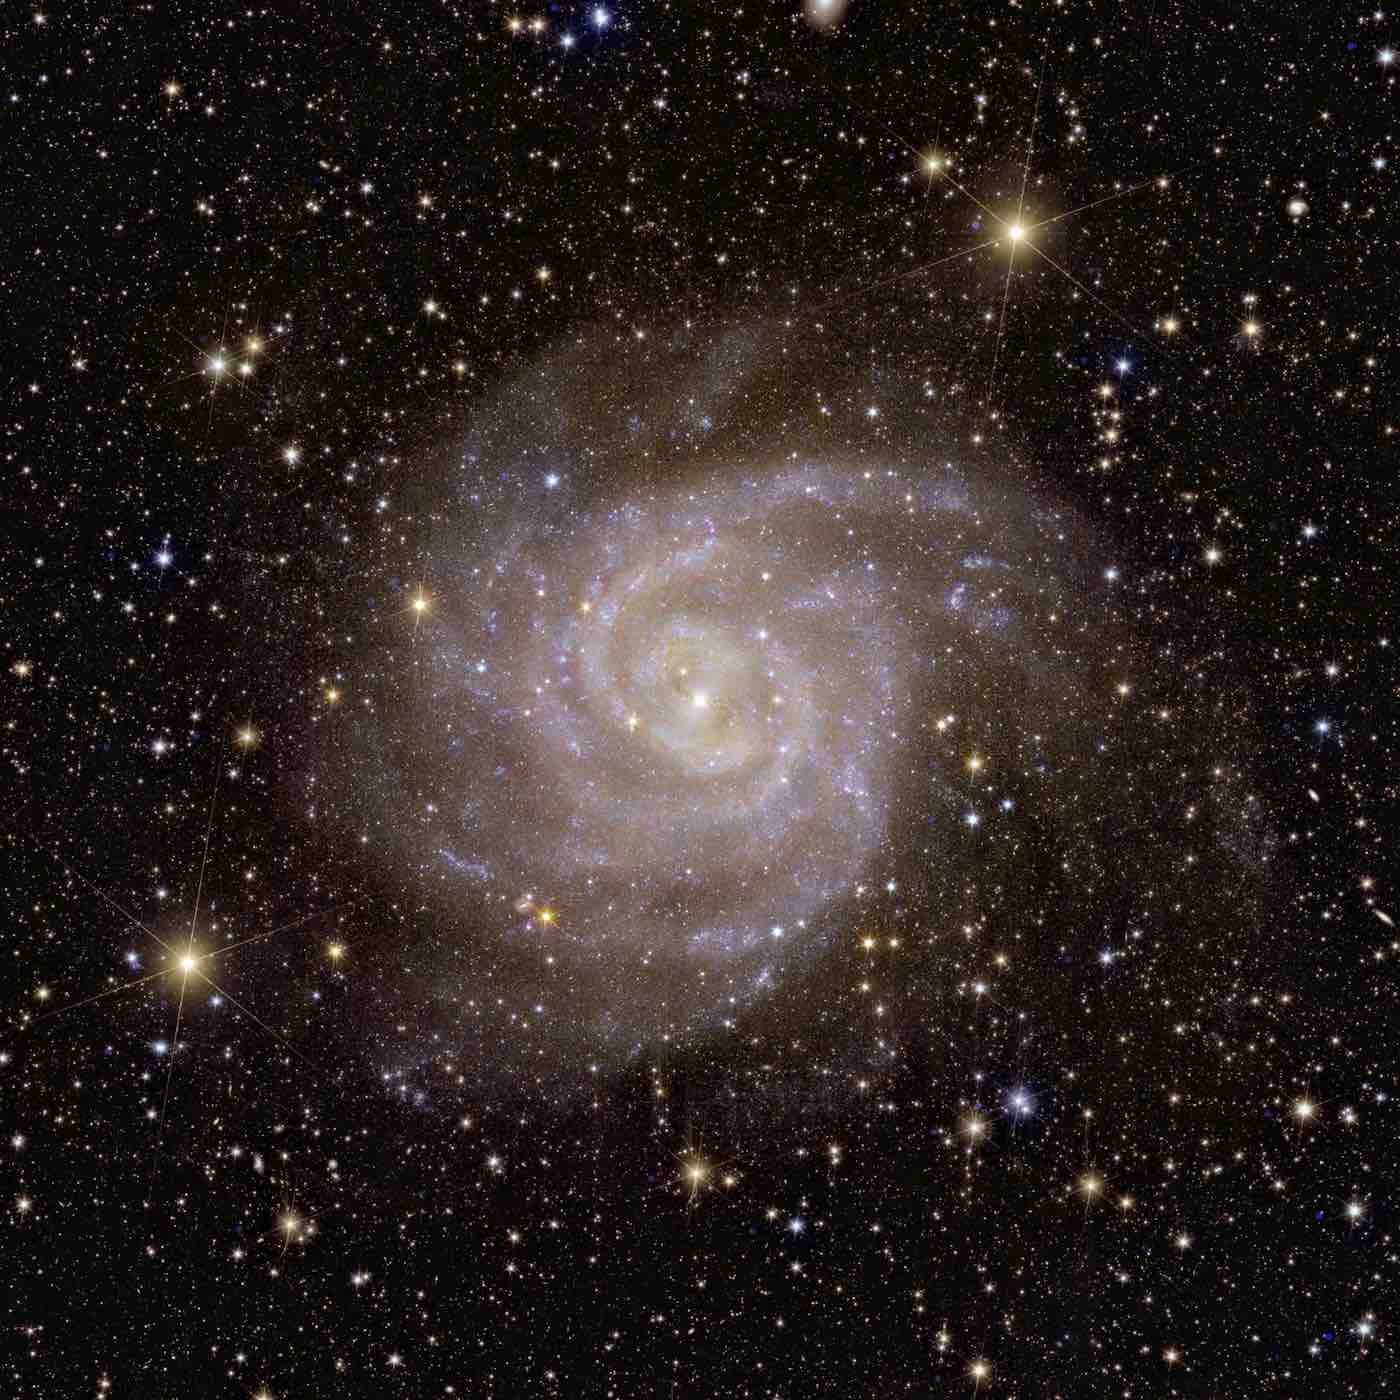 Vista de Euclides da galáxia espiral IC 342